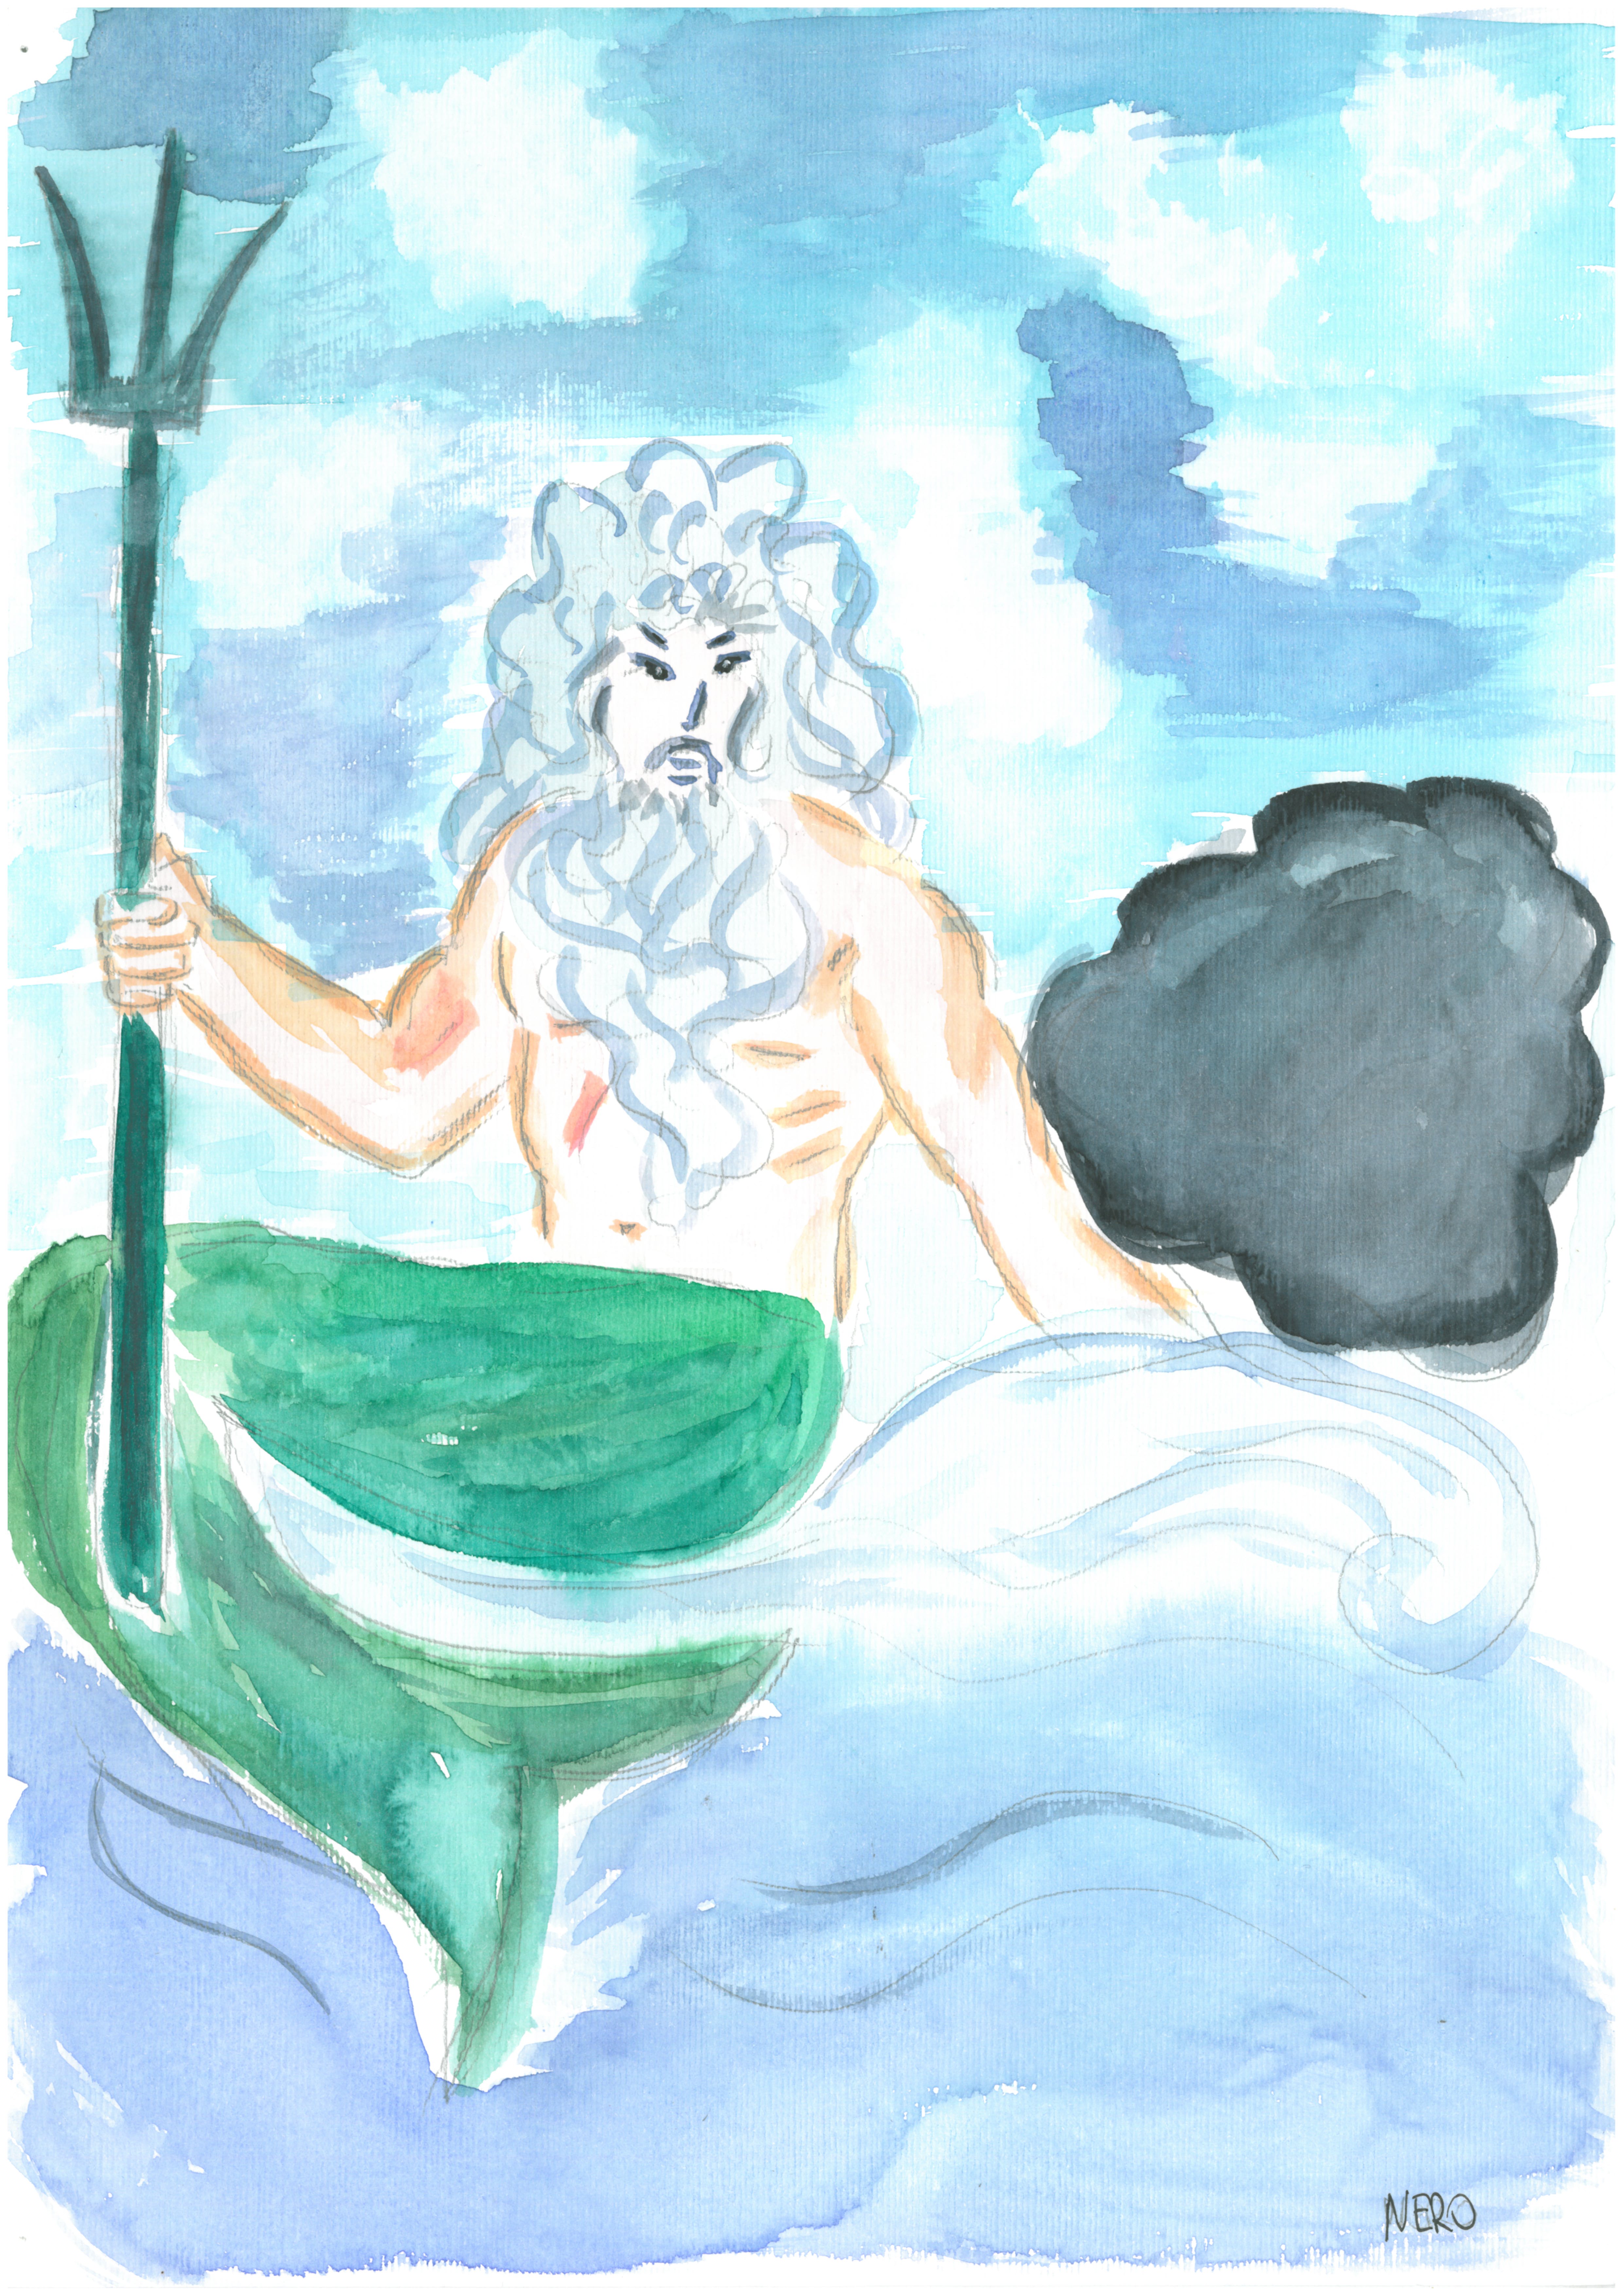 Il Re del Mare Poseidone è seduto sulle onde con il tridente in mano. Per metà è un uomo dai lunghi capelli e barba bianchi, a torso nudo, per l'altra metà è pesce, con una poderosa coda di pesce al posto delle gambe dal colore verde/azzurro cangiante. Accanto a lui, la nuvoletta nera.